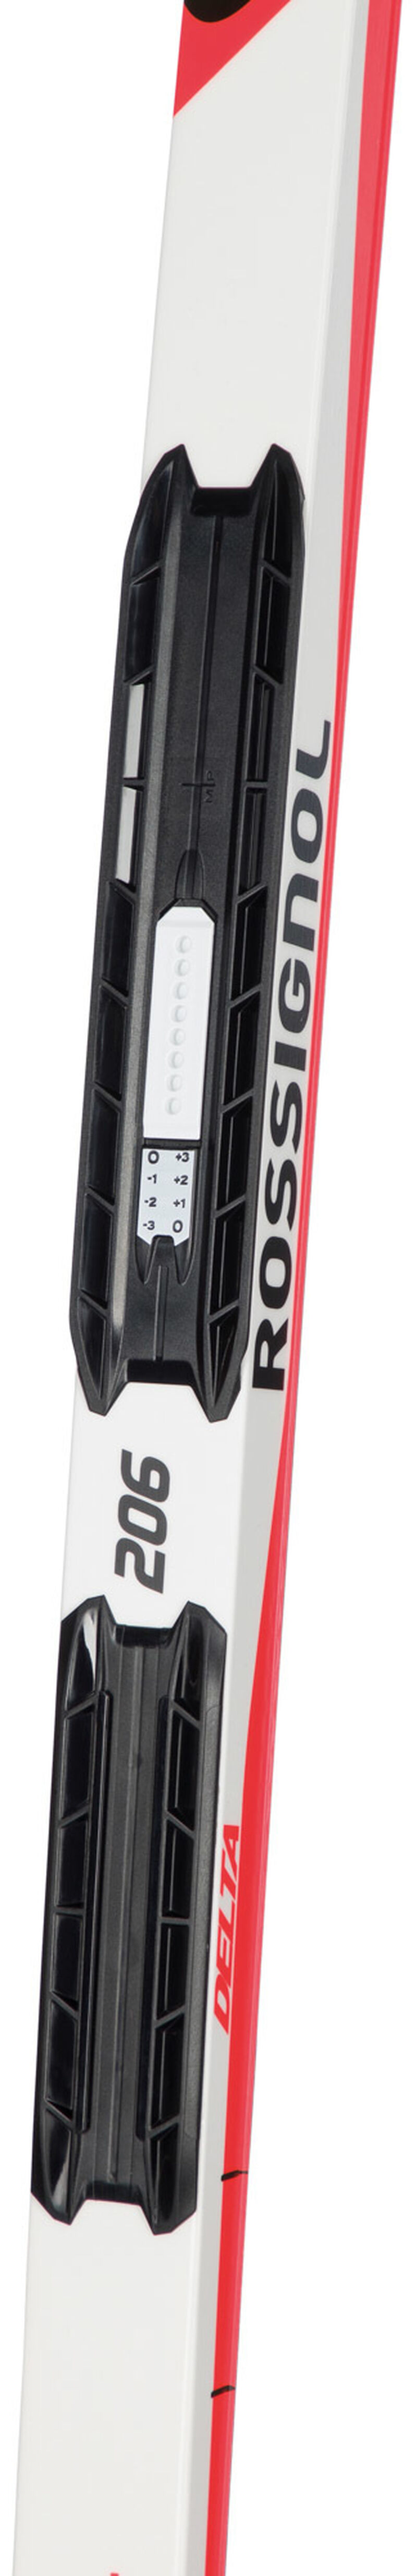 Rossignol Delta Sport Classic Skis, $229